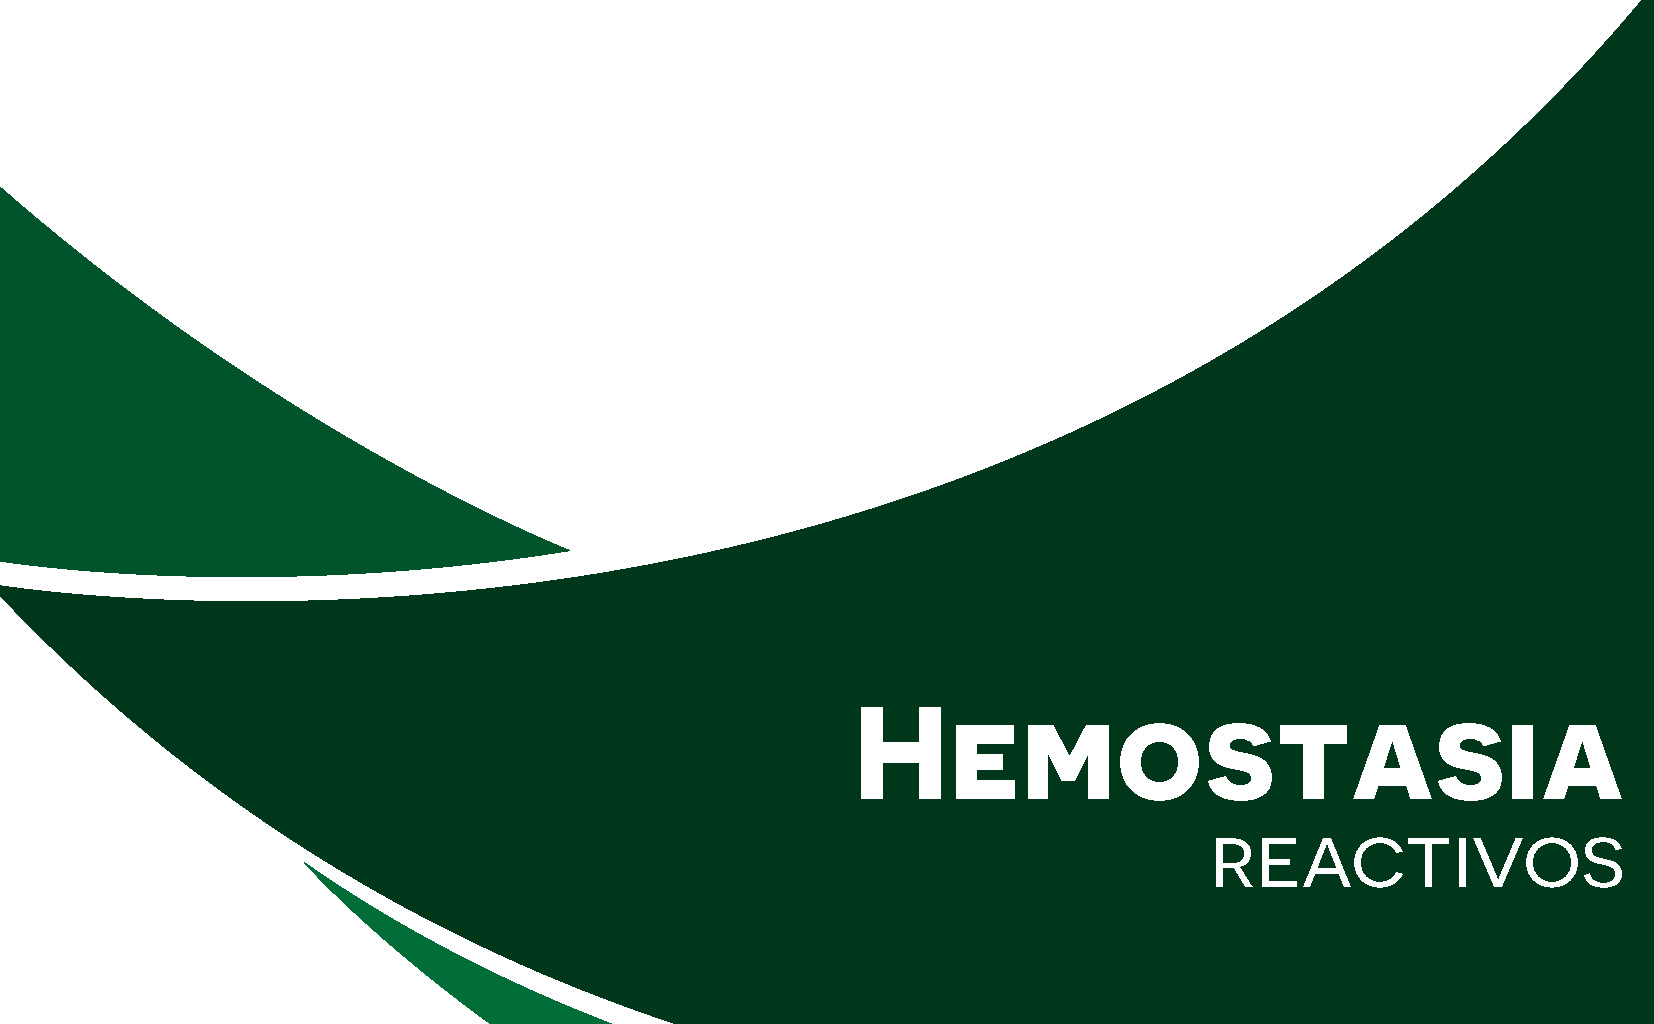 Listado de Reactivos para Hemostasia en Coech